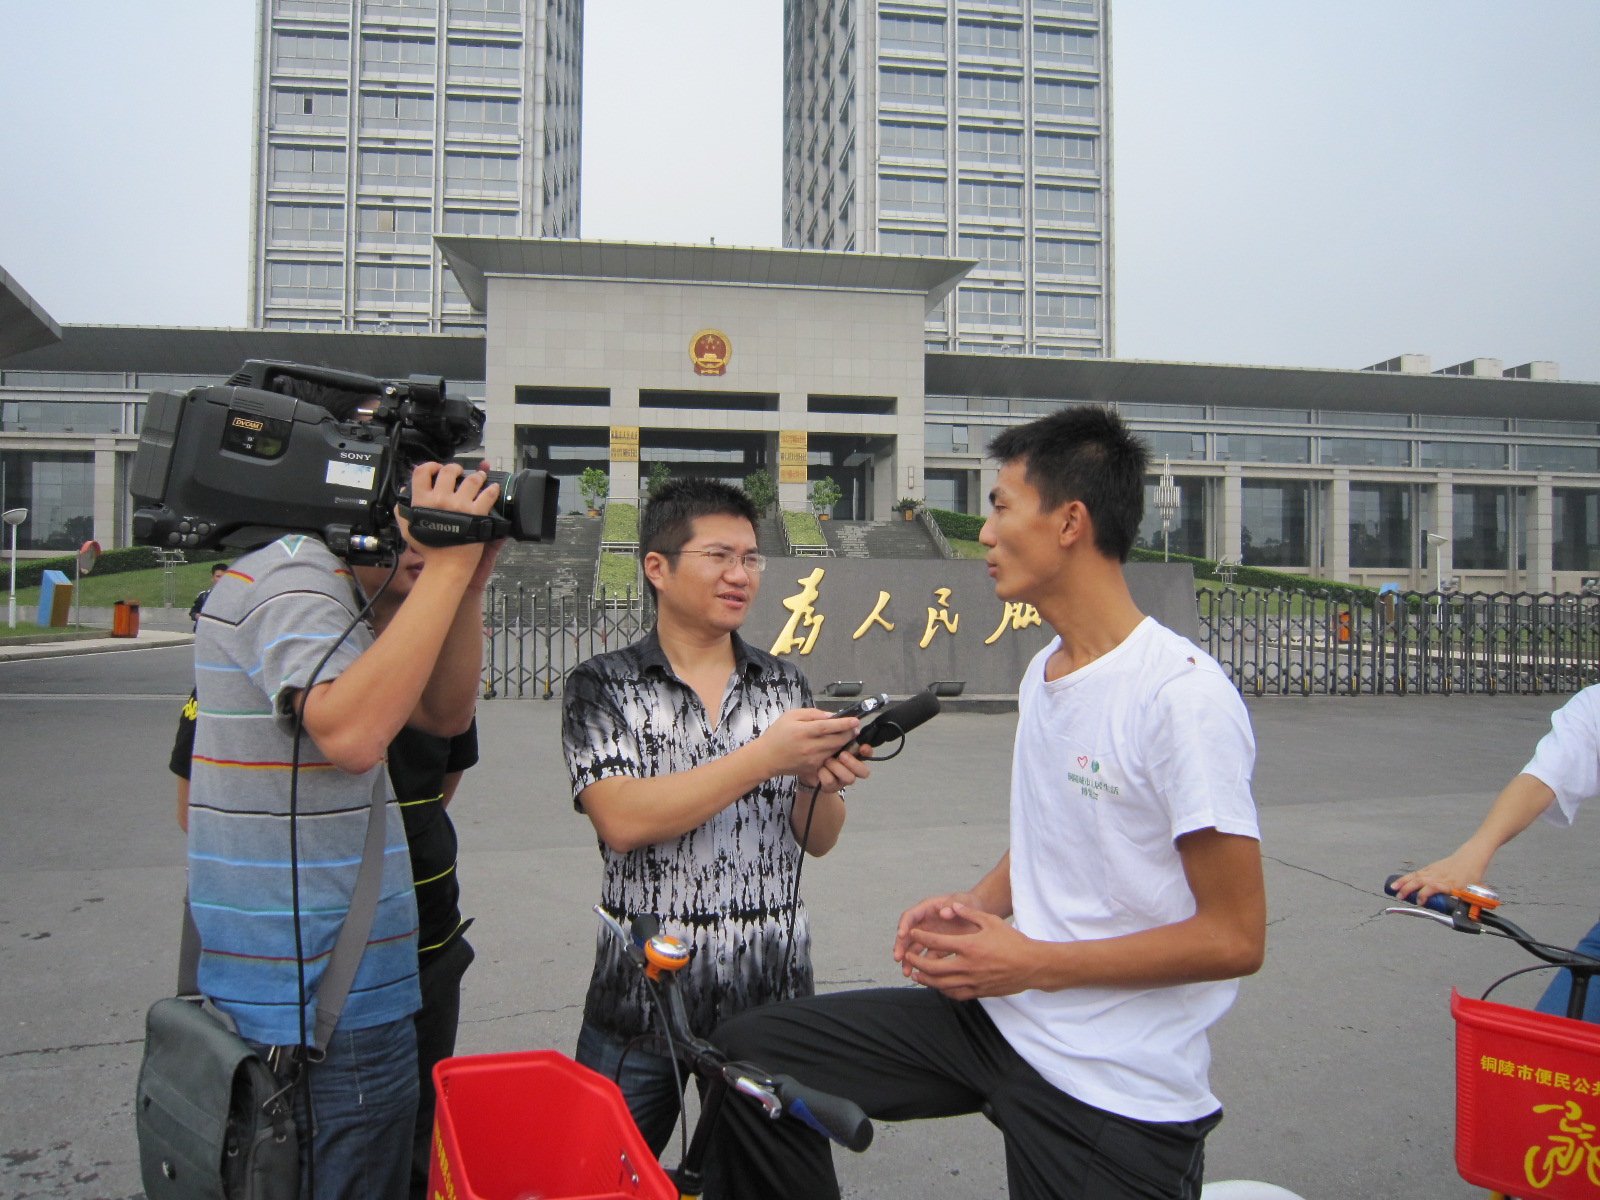 會員活動中接受銅陵電視台記者採訪